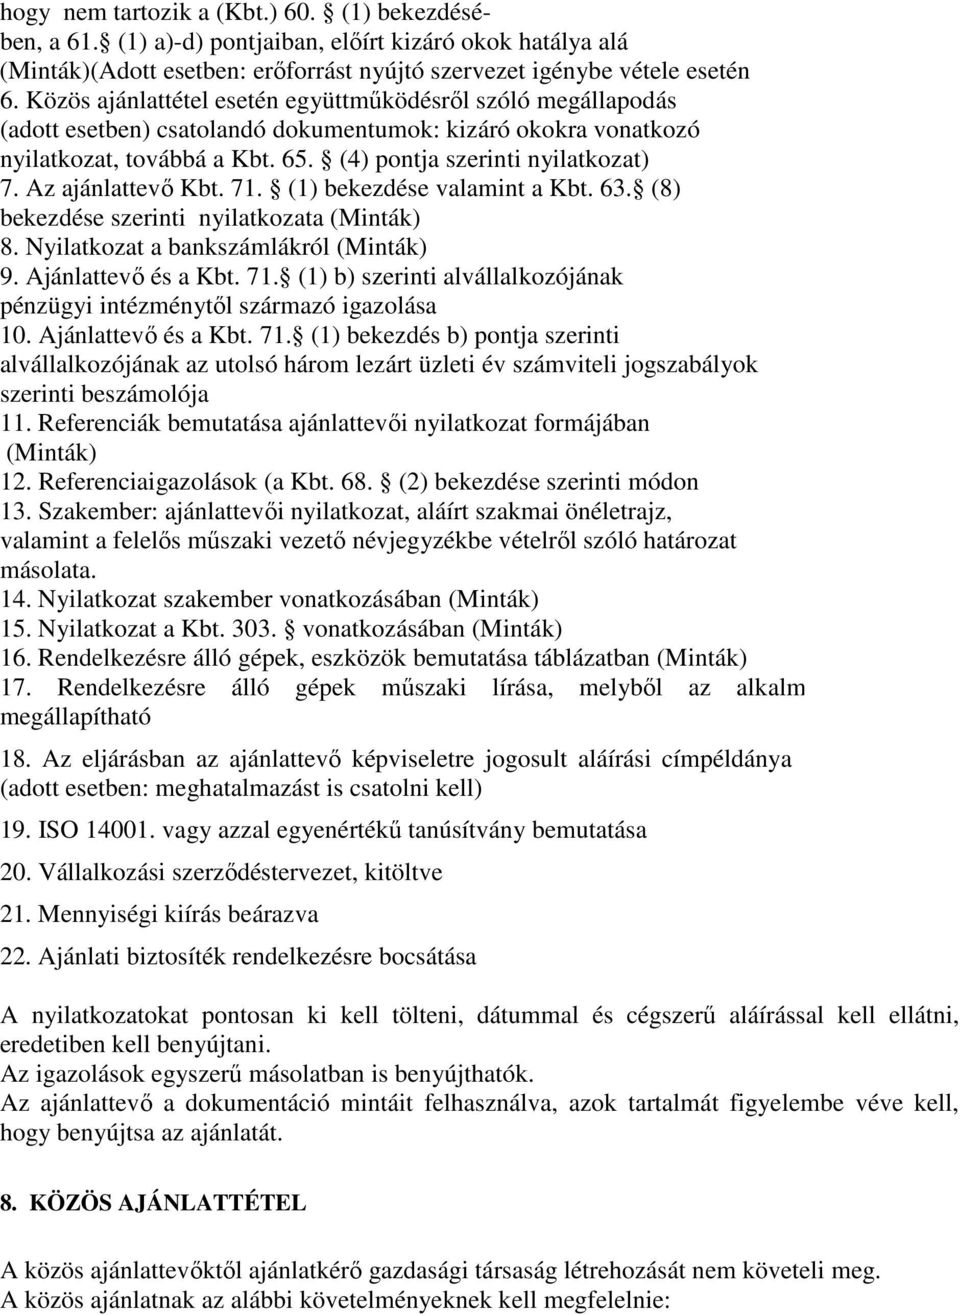 Az ajánlattevı Kbt. 71. (1) bekezdése valamint a Kbt. 63. (8) bekezdése szerinti nyilatkozata (Minták) 8. Nyilatkozat a bankszámlákról (Minták) 9. Ajánlattevı és a Kbt. 71. (1) b) szerinti alvállalkozójának pénzügyi intézménytıl származó igazolása 10.